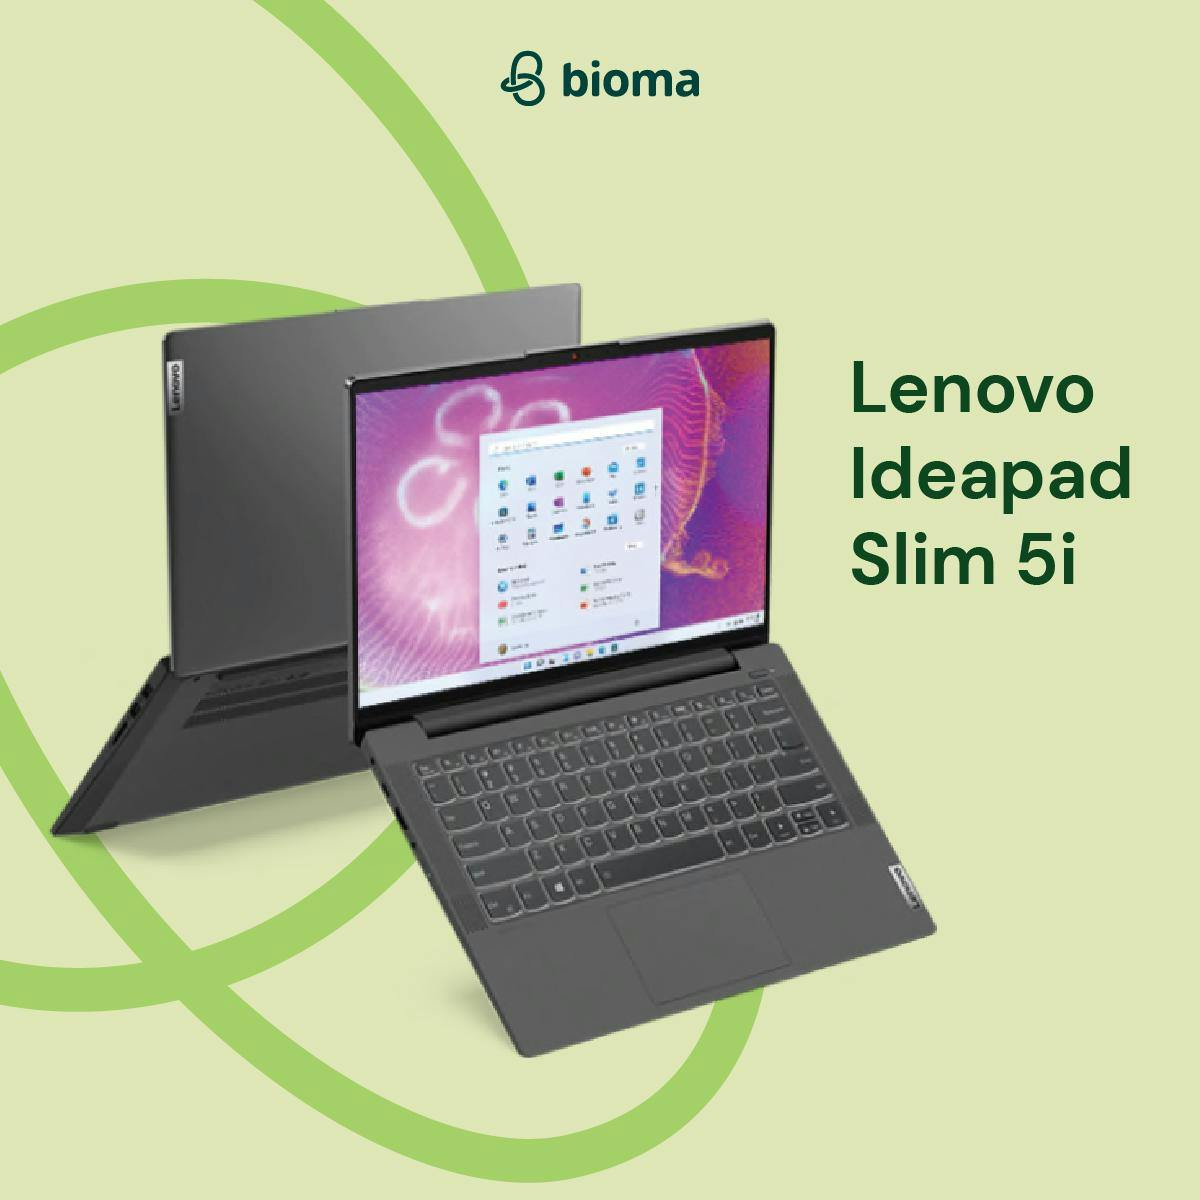 Lenovo Ideapad Slim 5i